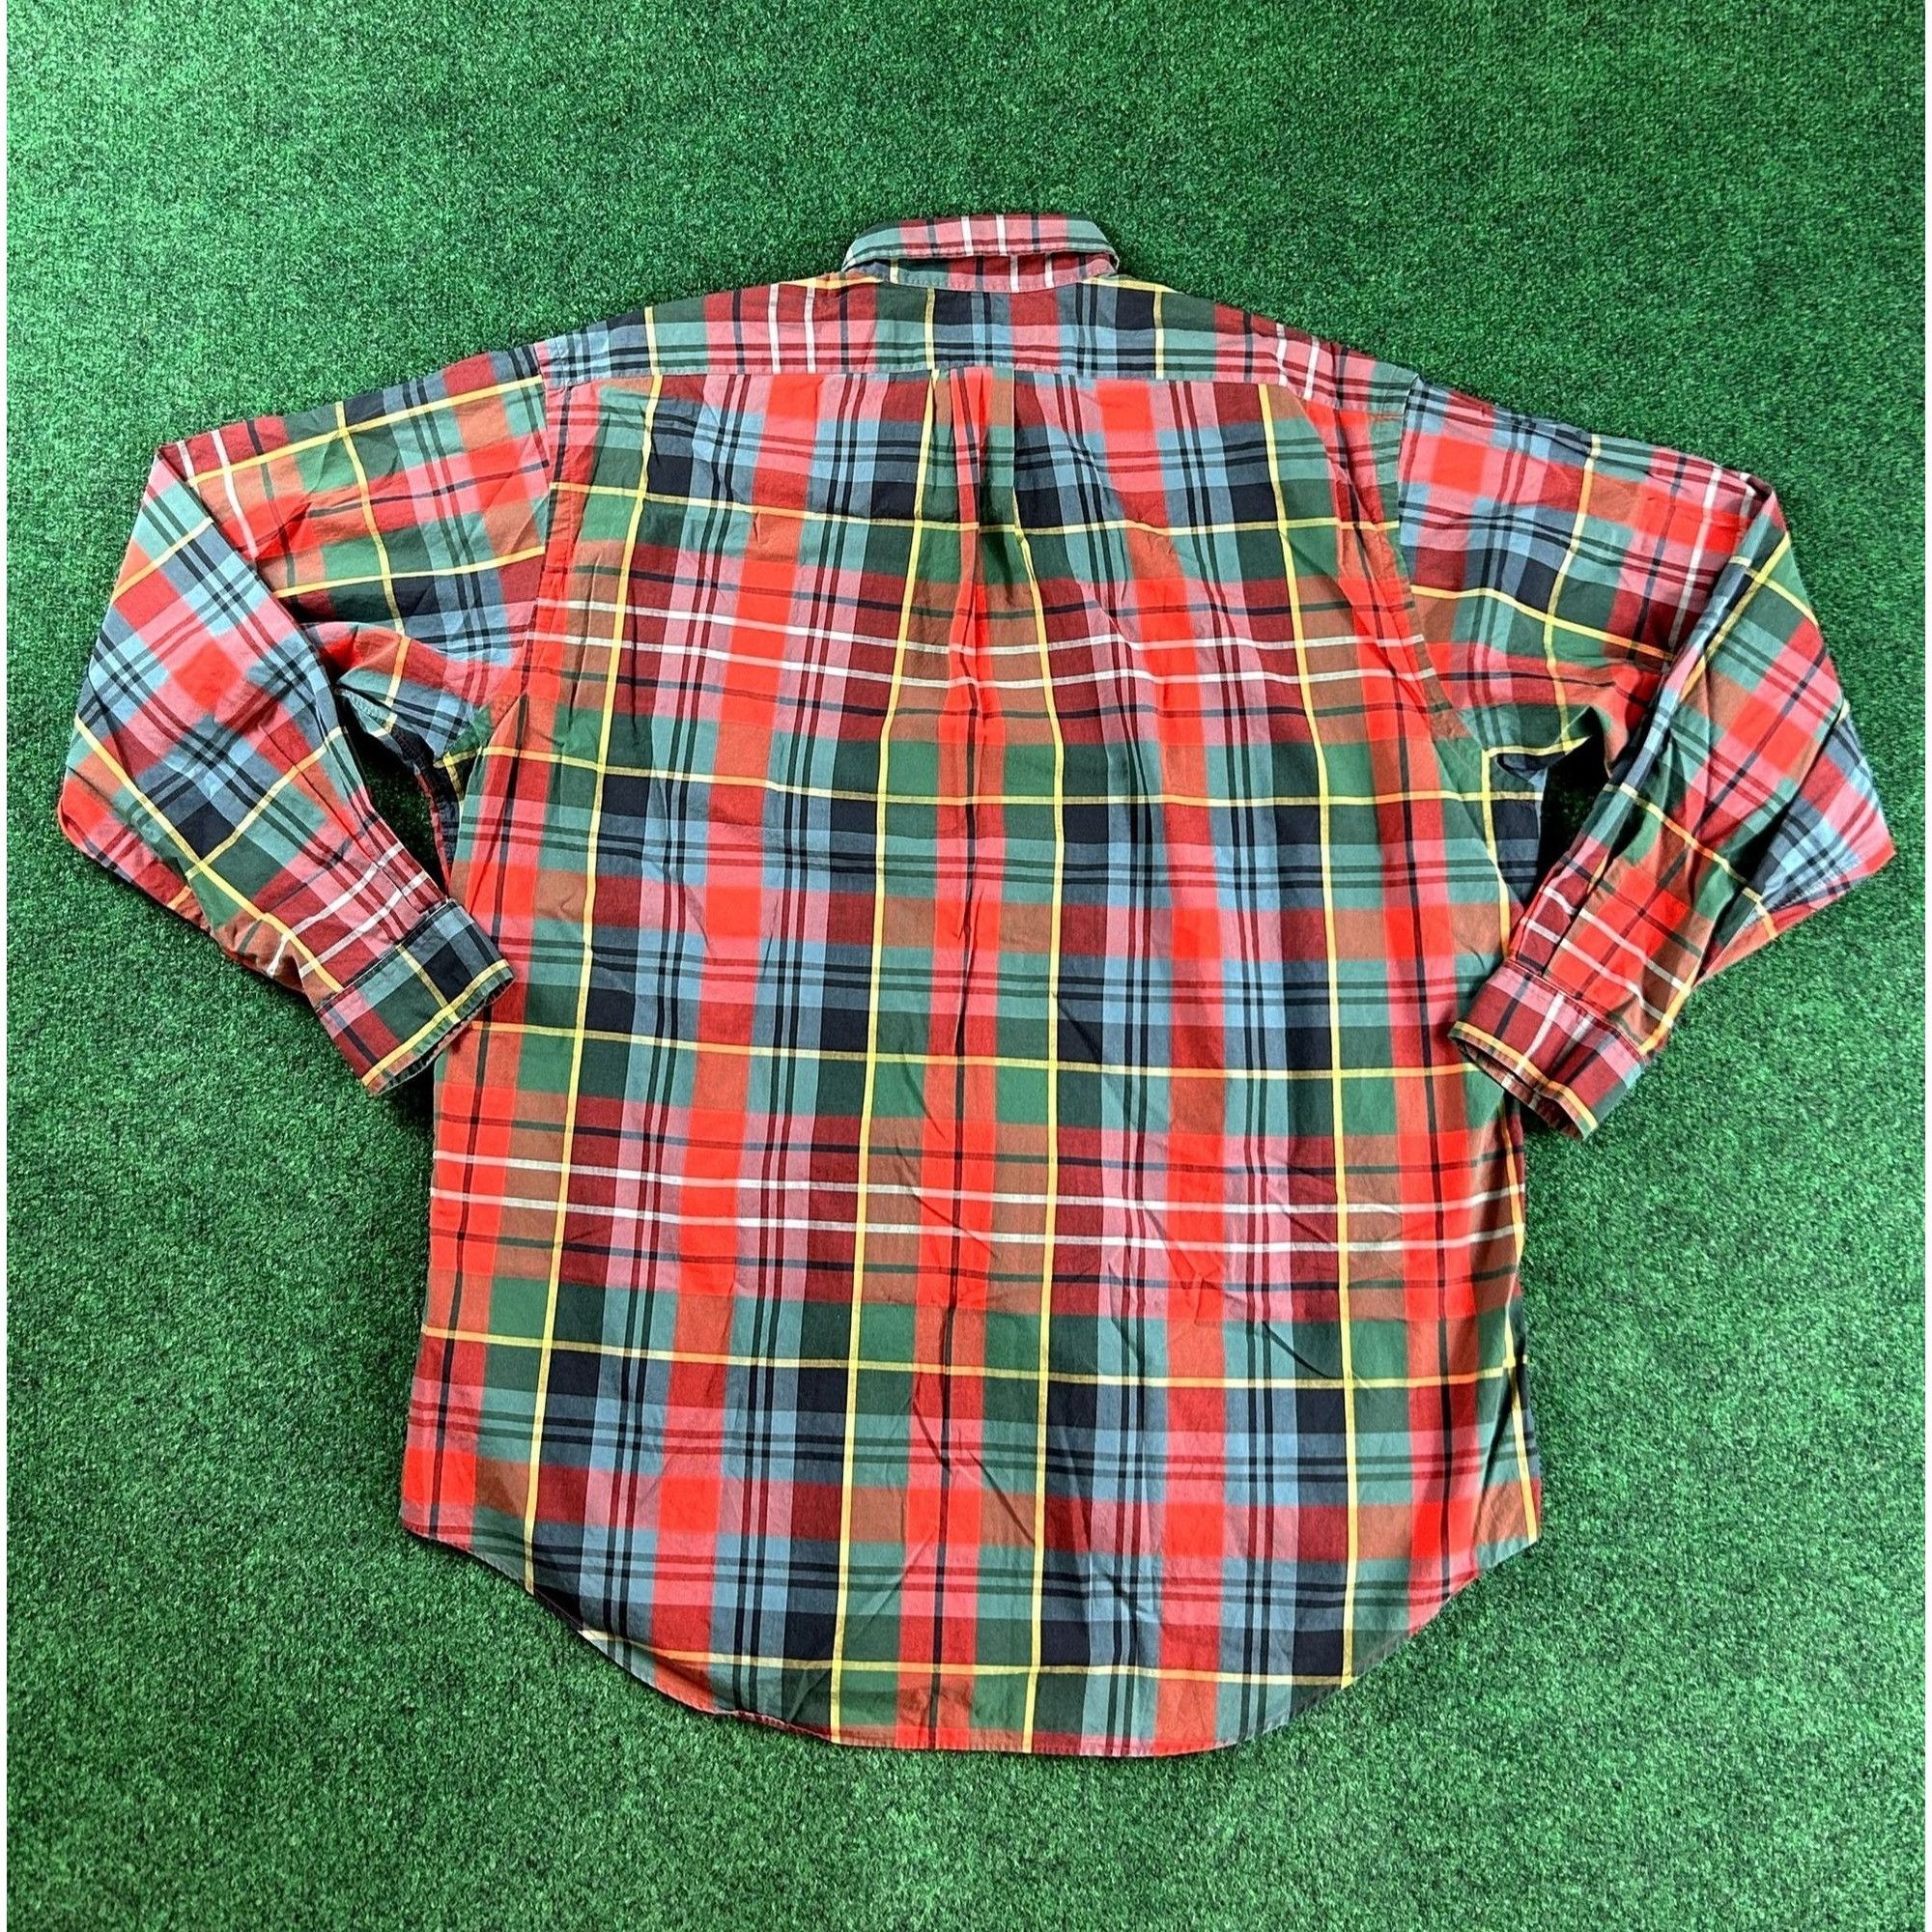 Ralph Lauren Ralph Lauren Red & Green Plaid Long Sleeve Button Down Shirt Size US L / EU 52-54 / 3 - 2 Preview